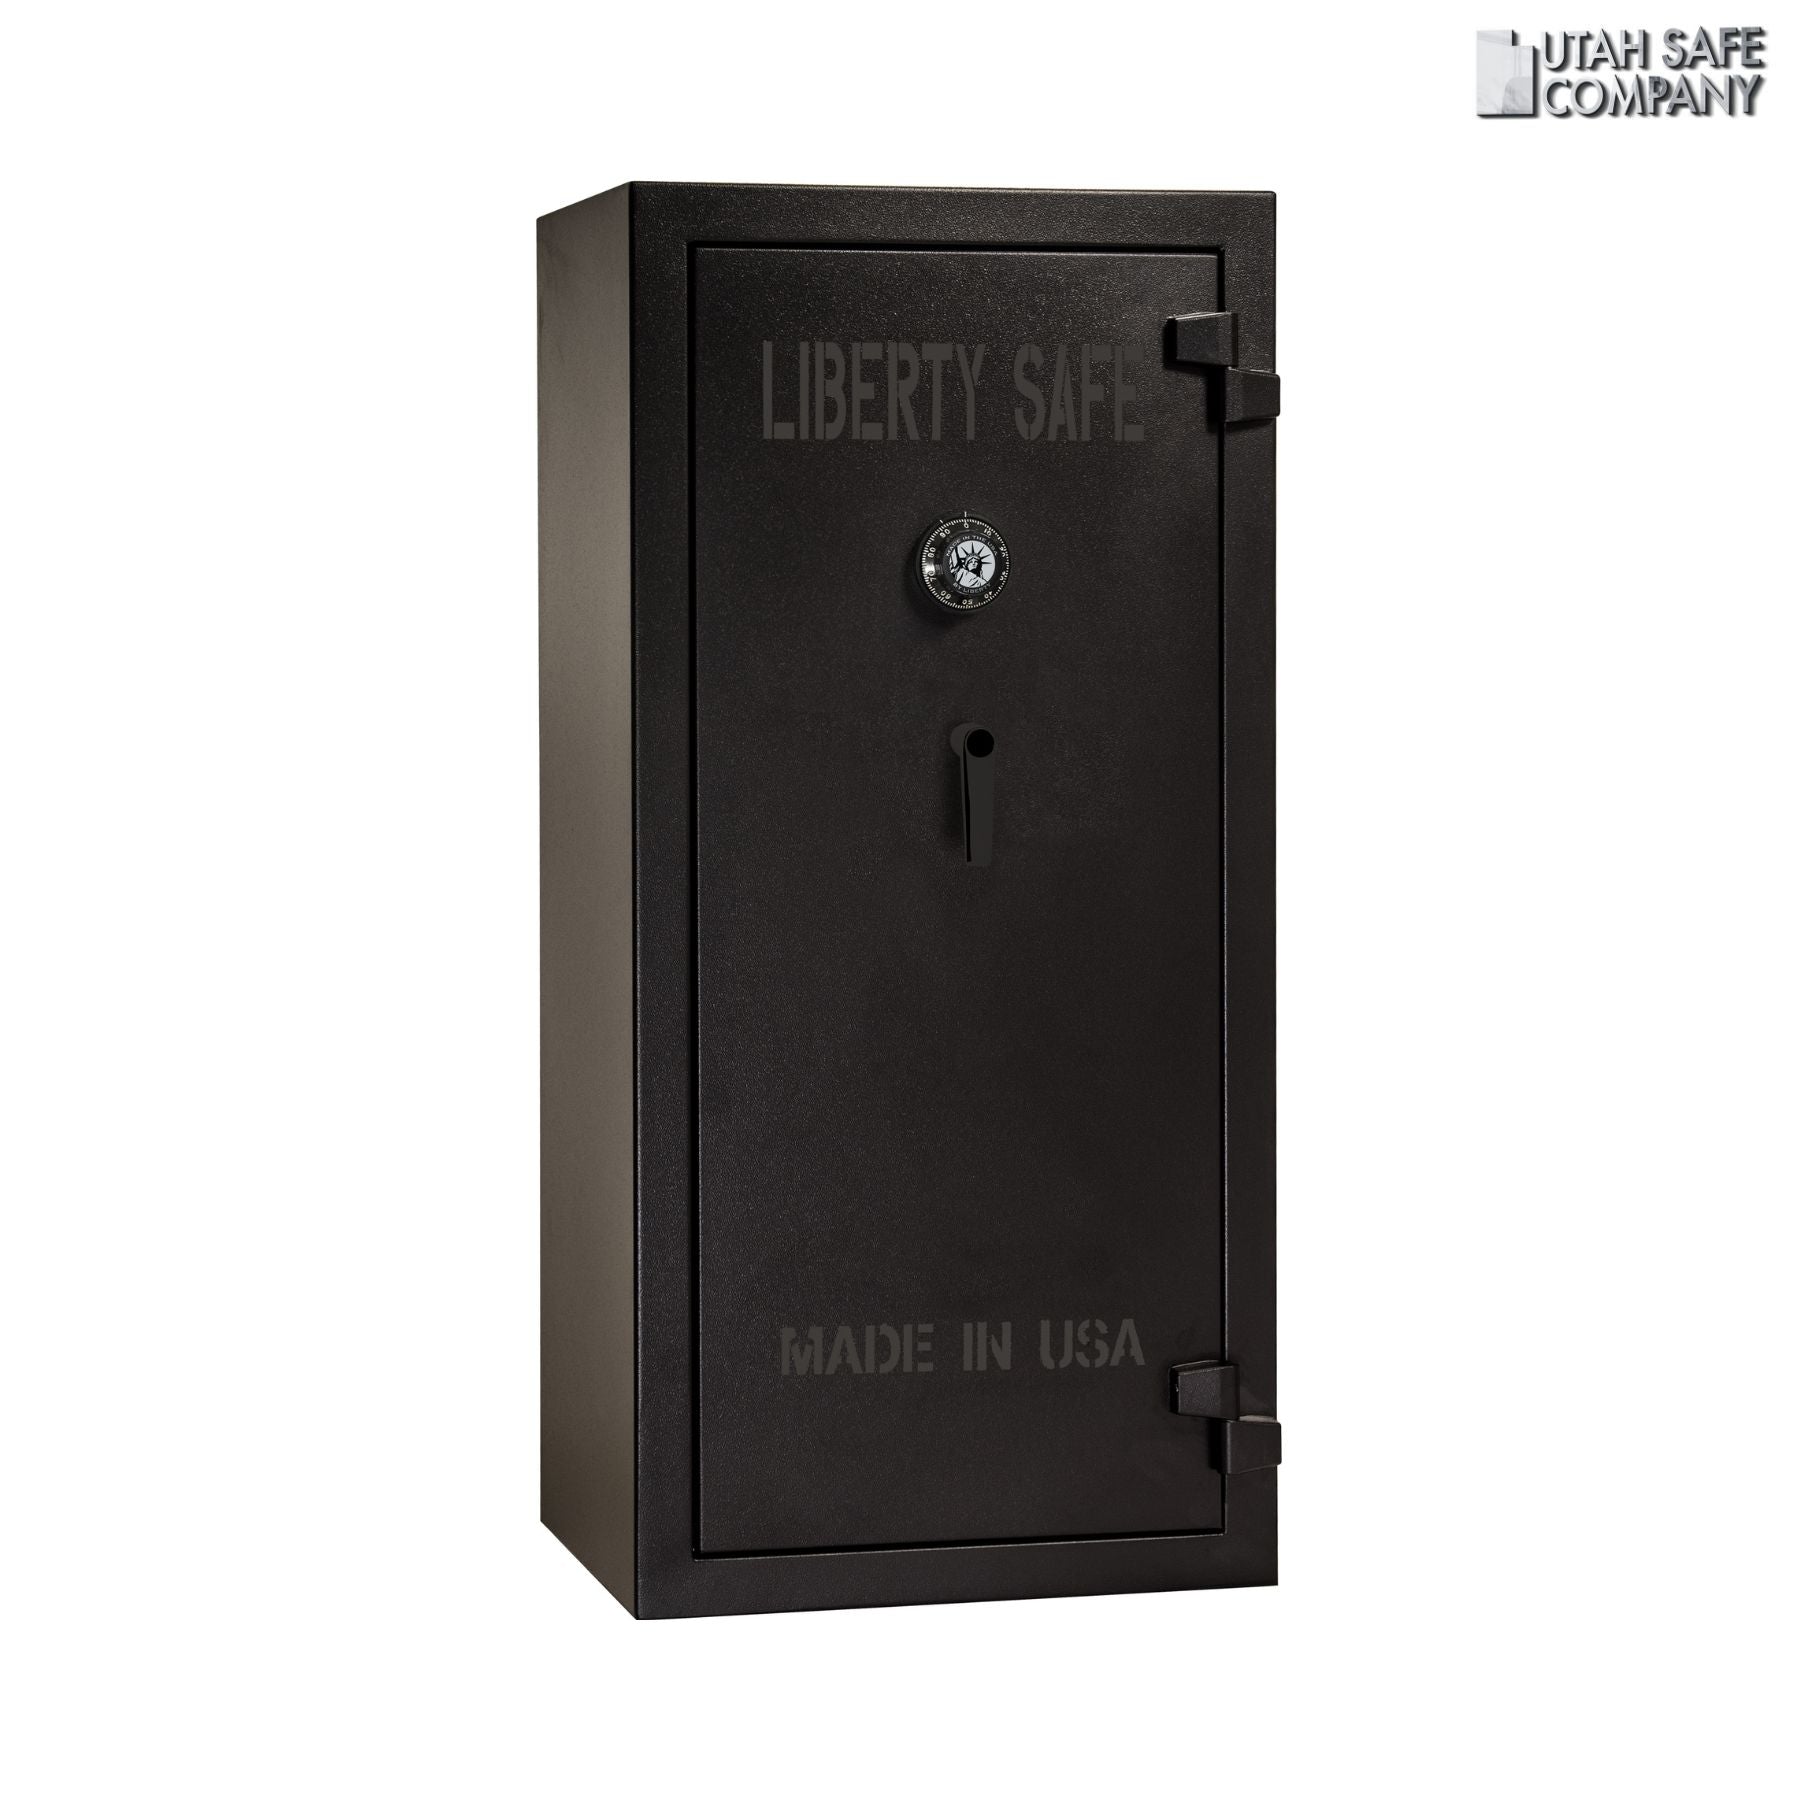 Liberty Tactical 24 Gun Safe - Utah Safe Company